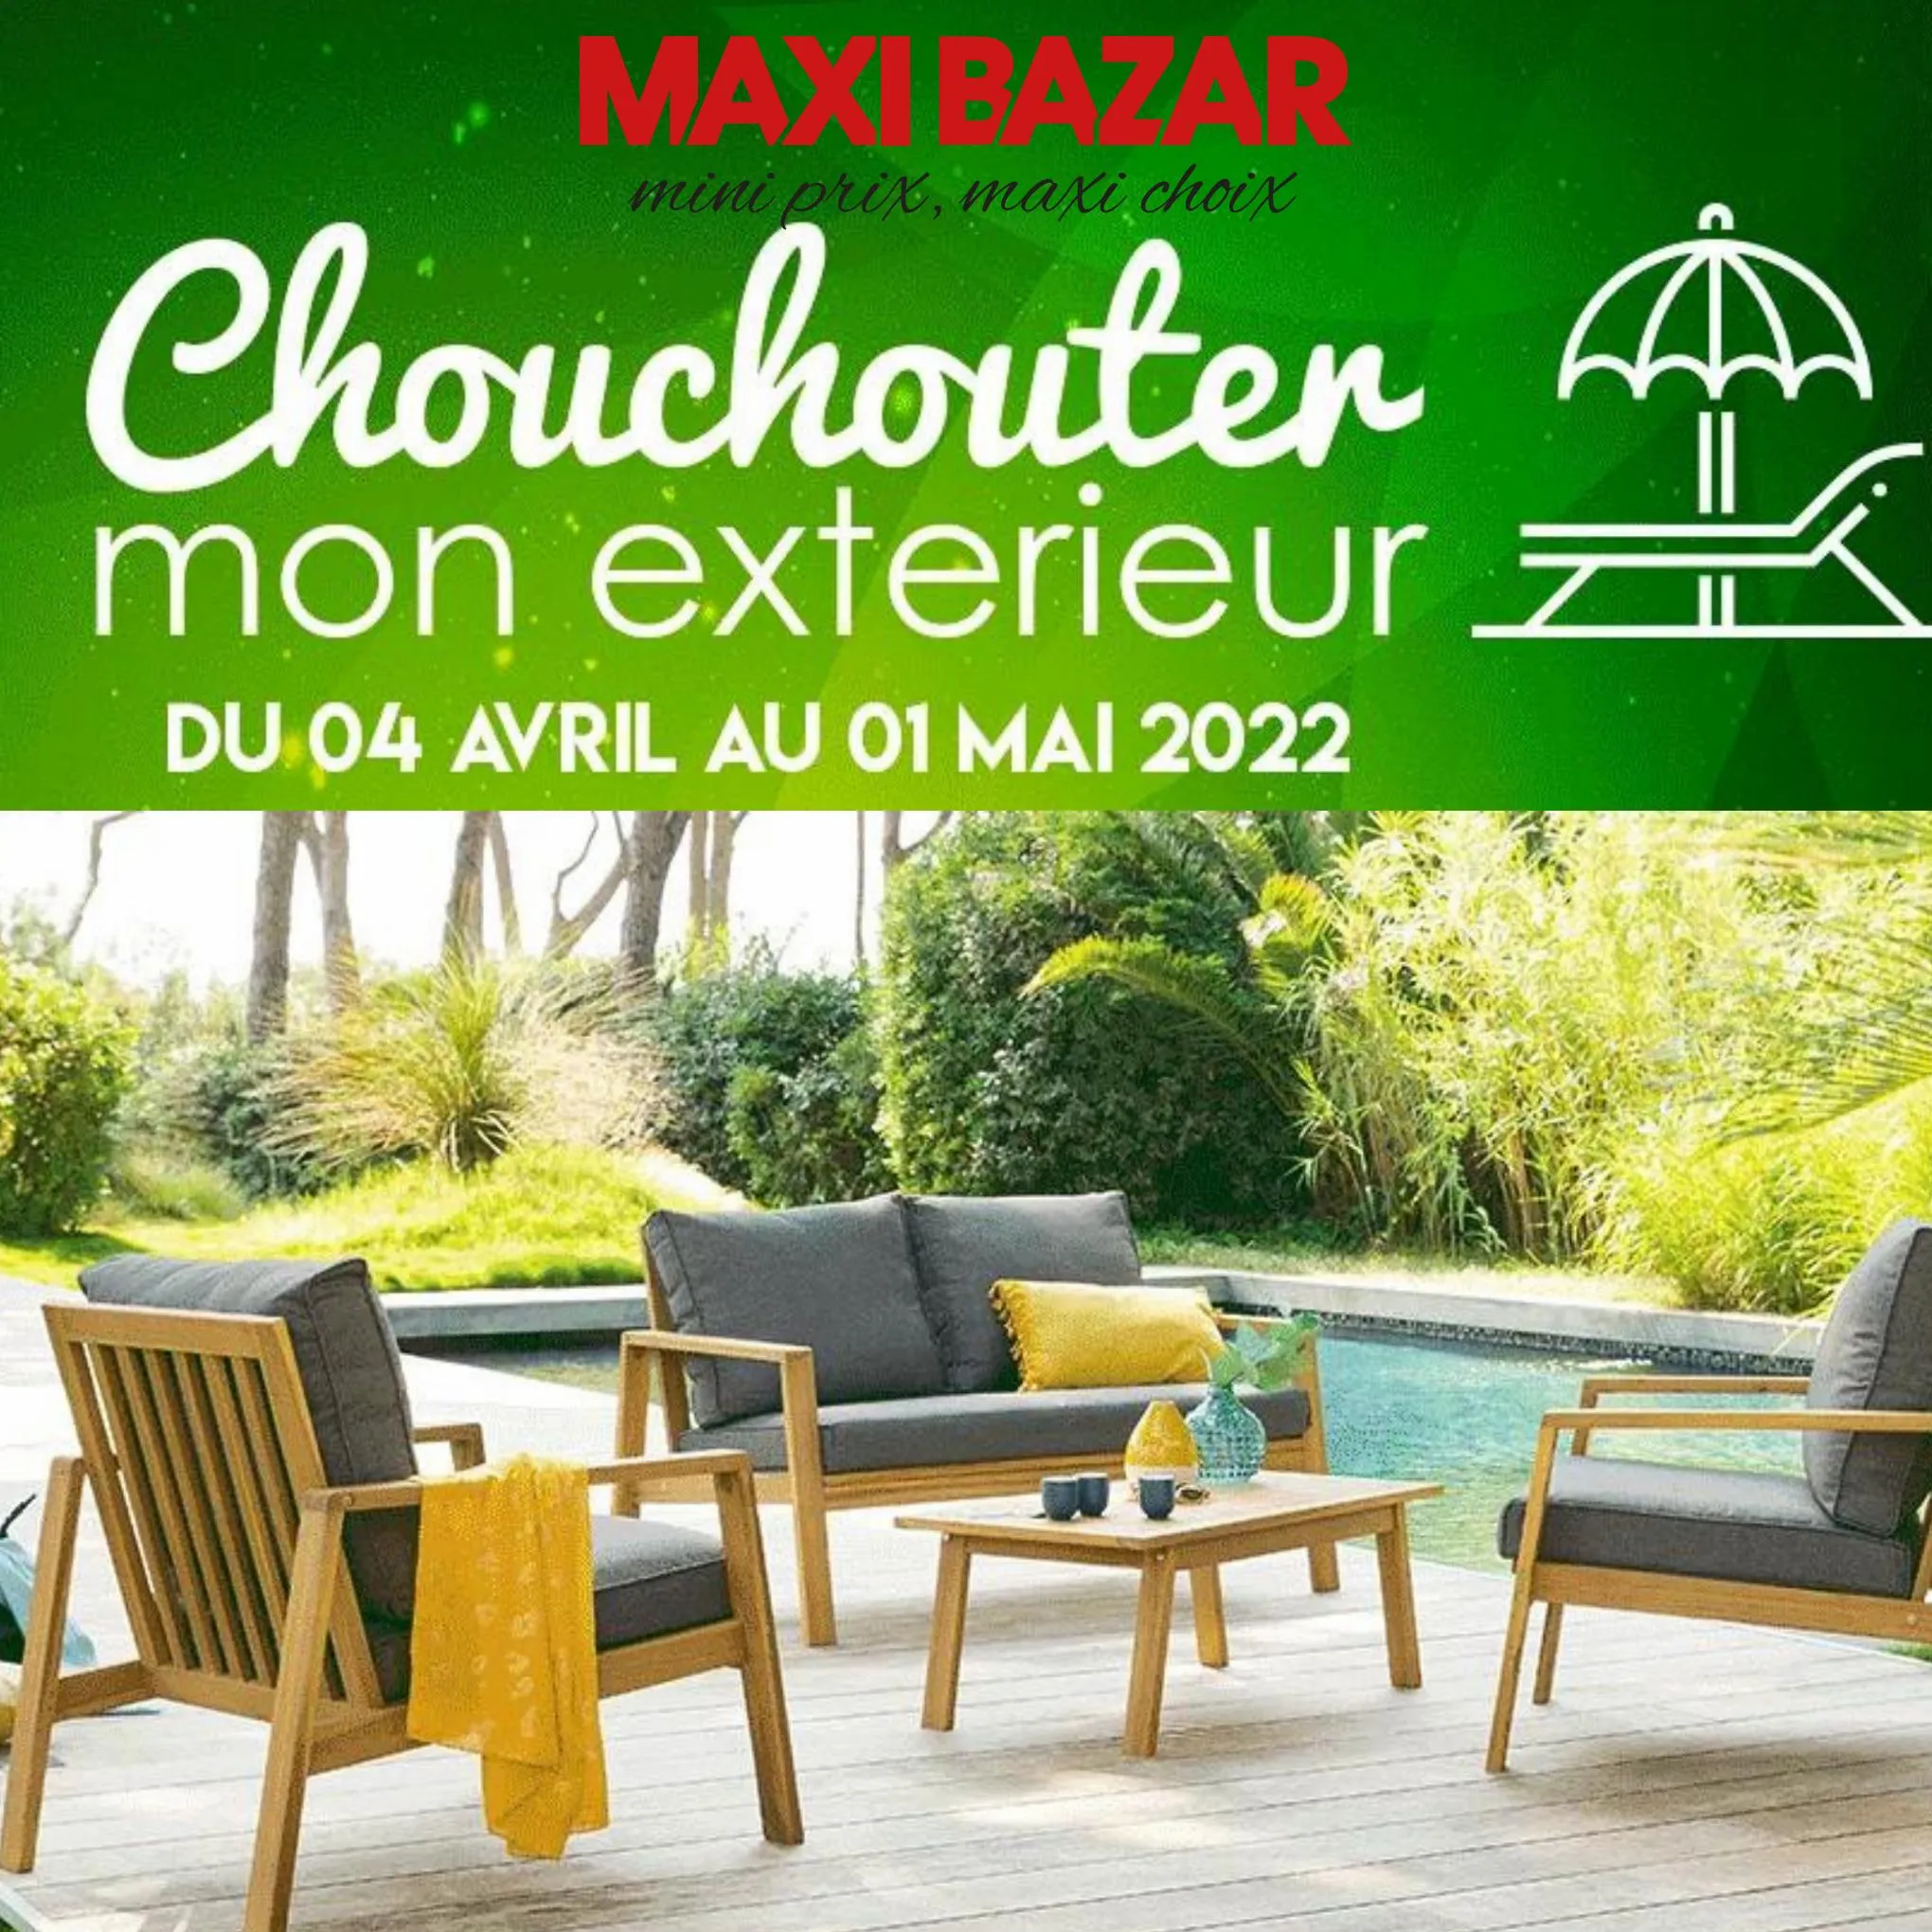 Catalogue Chouchouter Mon Exterieur, page 00001